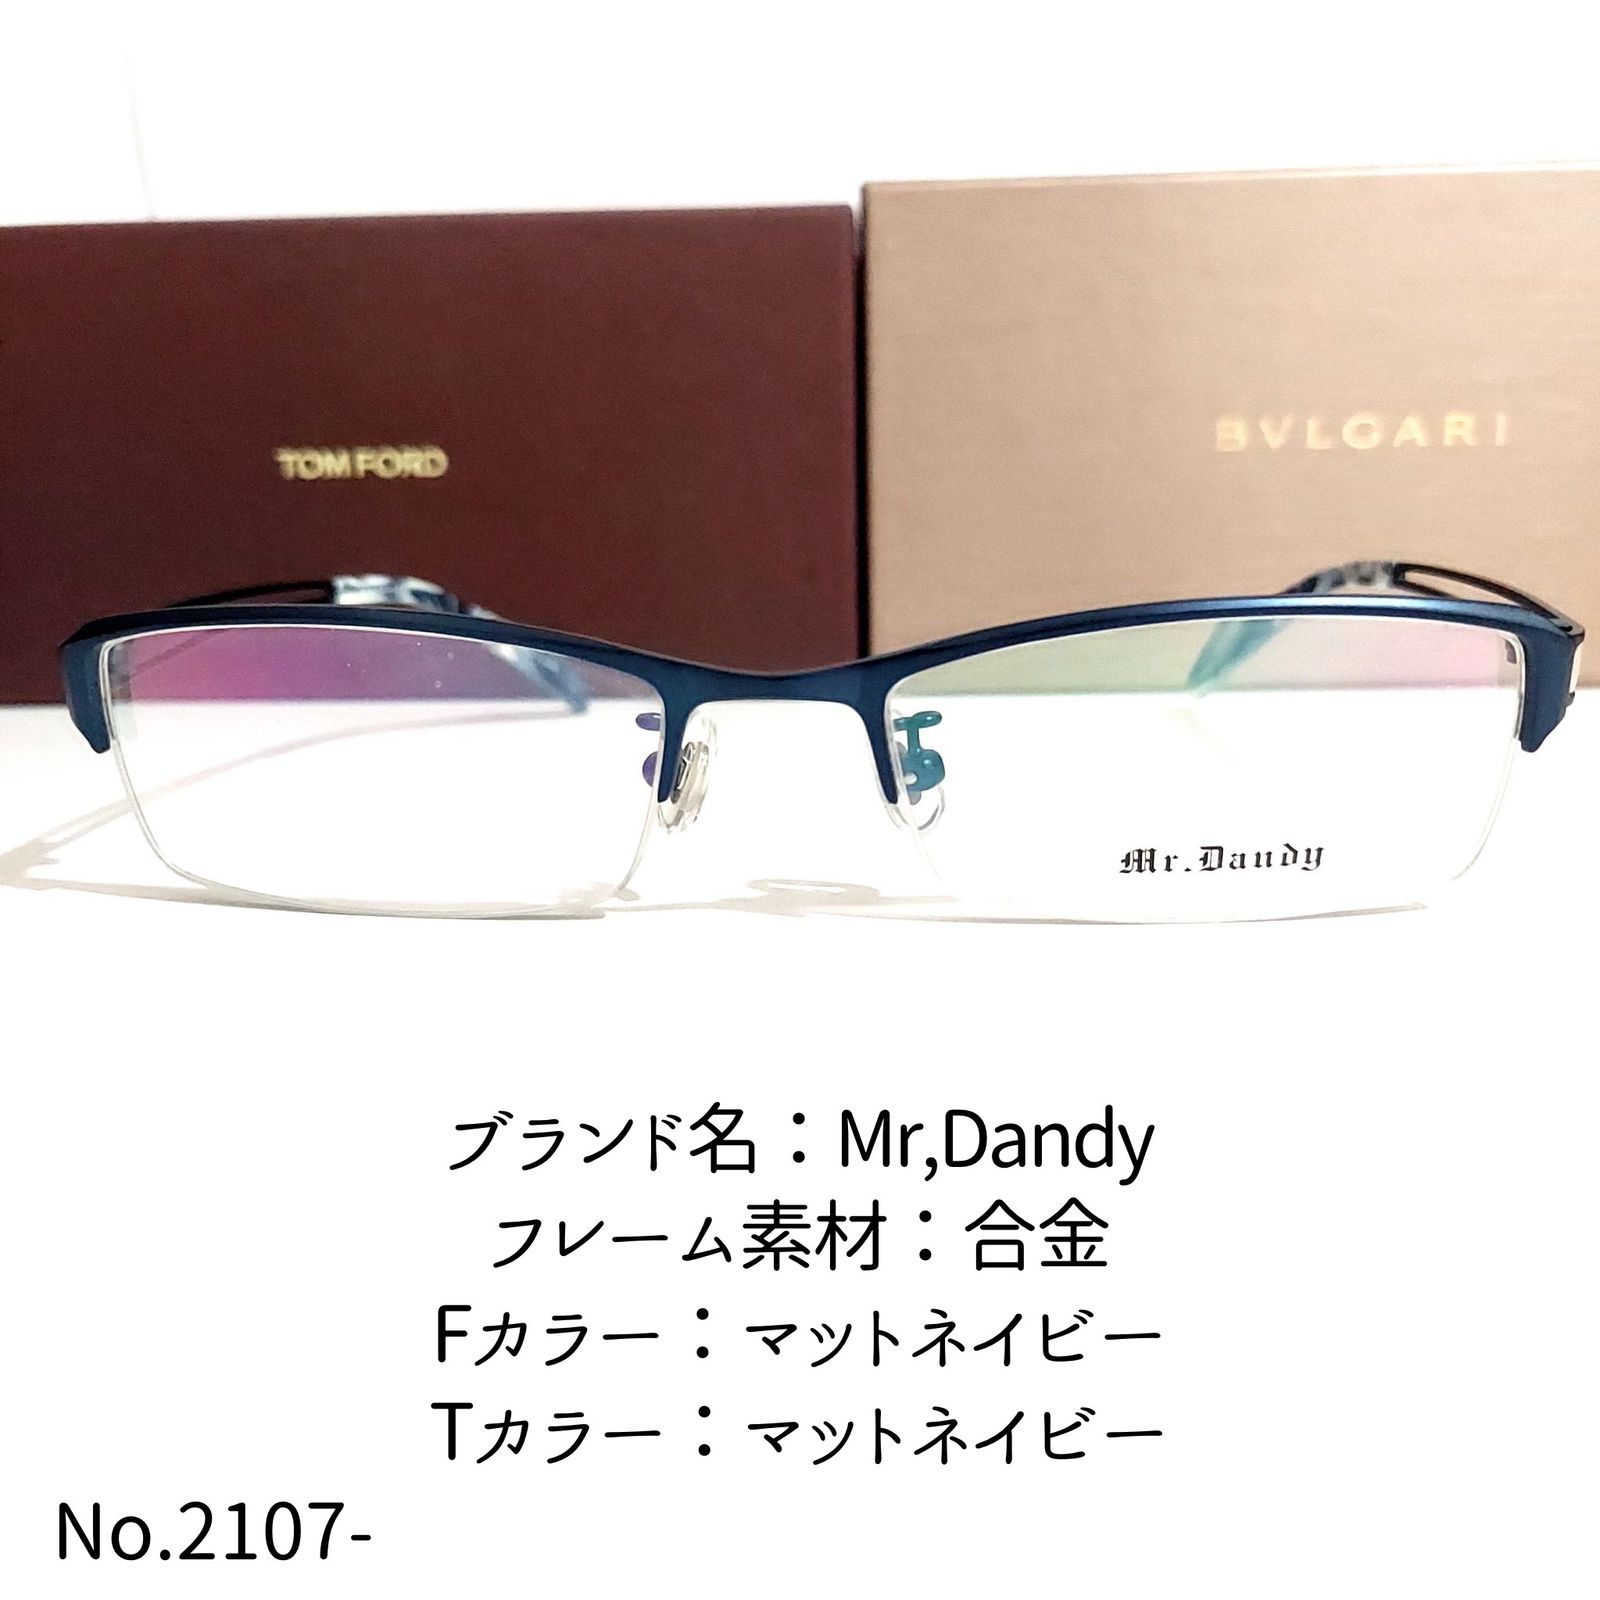 No.2107-メガネ Mr,Dandy【フレームのみ価格】 - スッキリ生活専門店